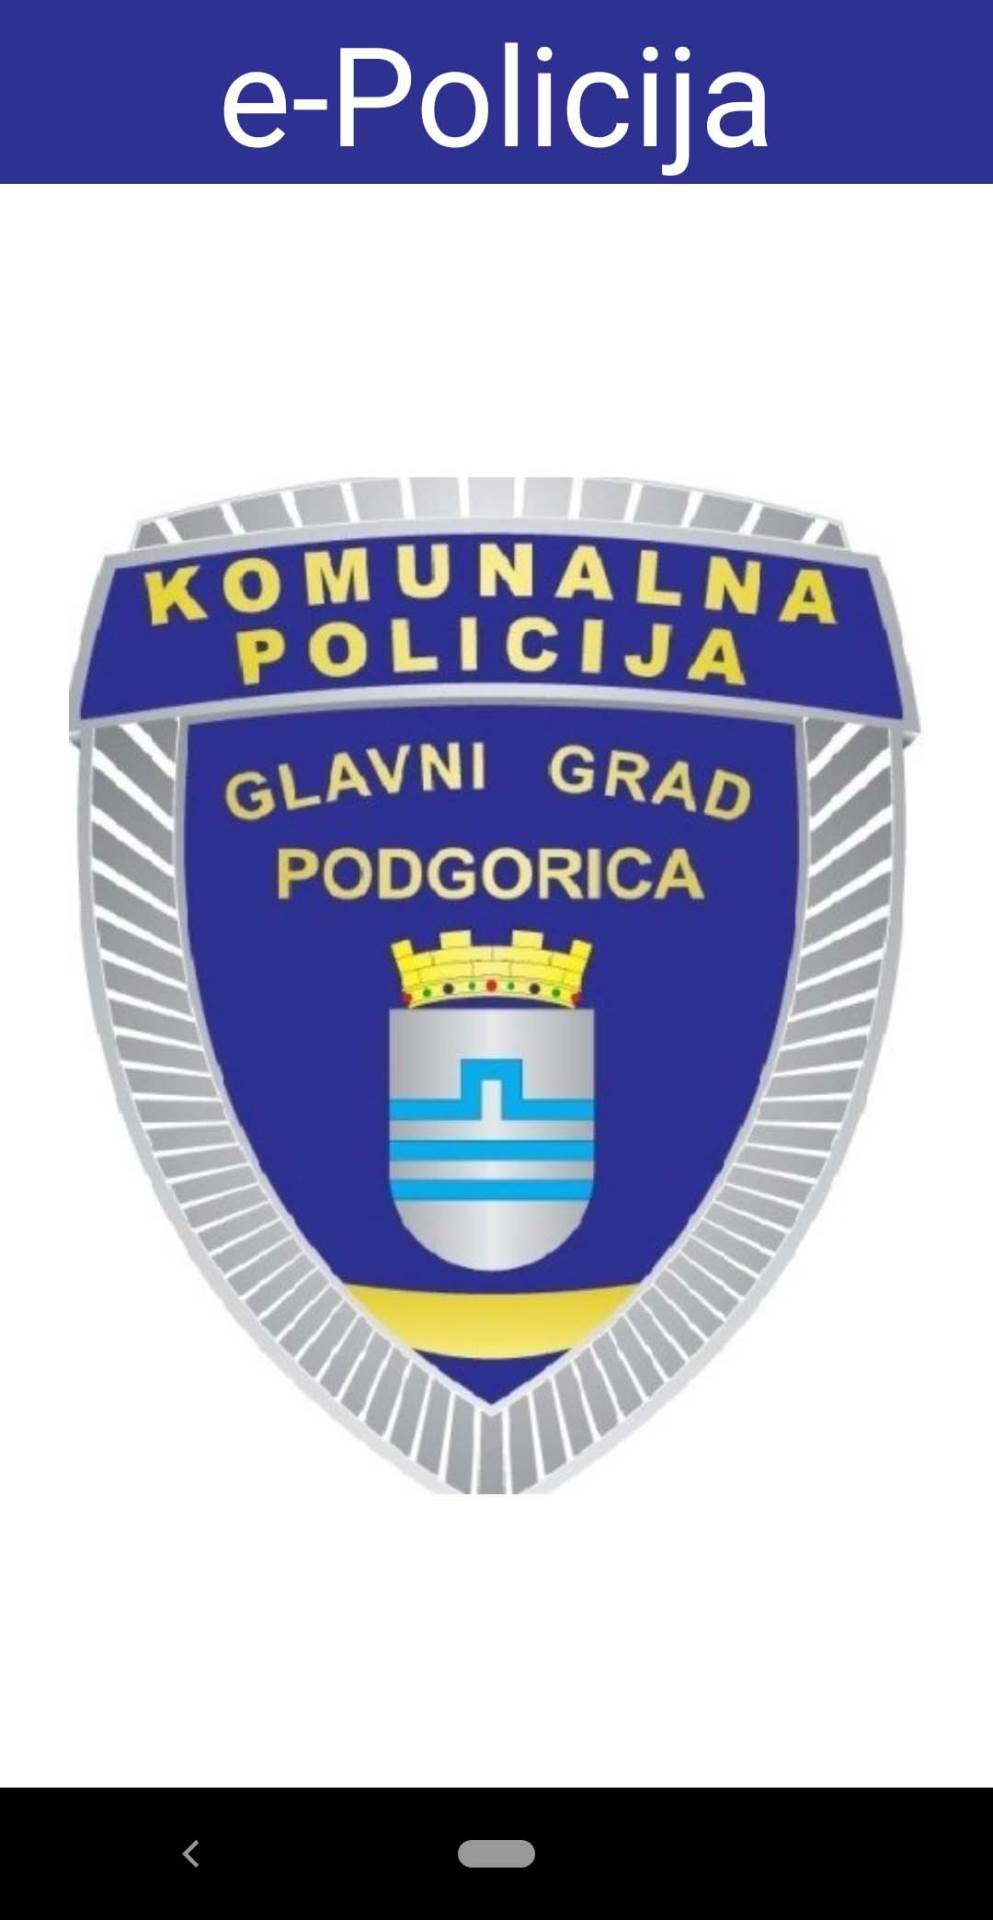  Upotrebom aplikacije e-Policija operativniji rad komunalne policije 